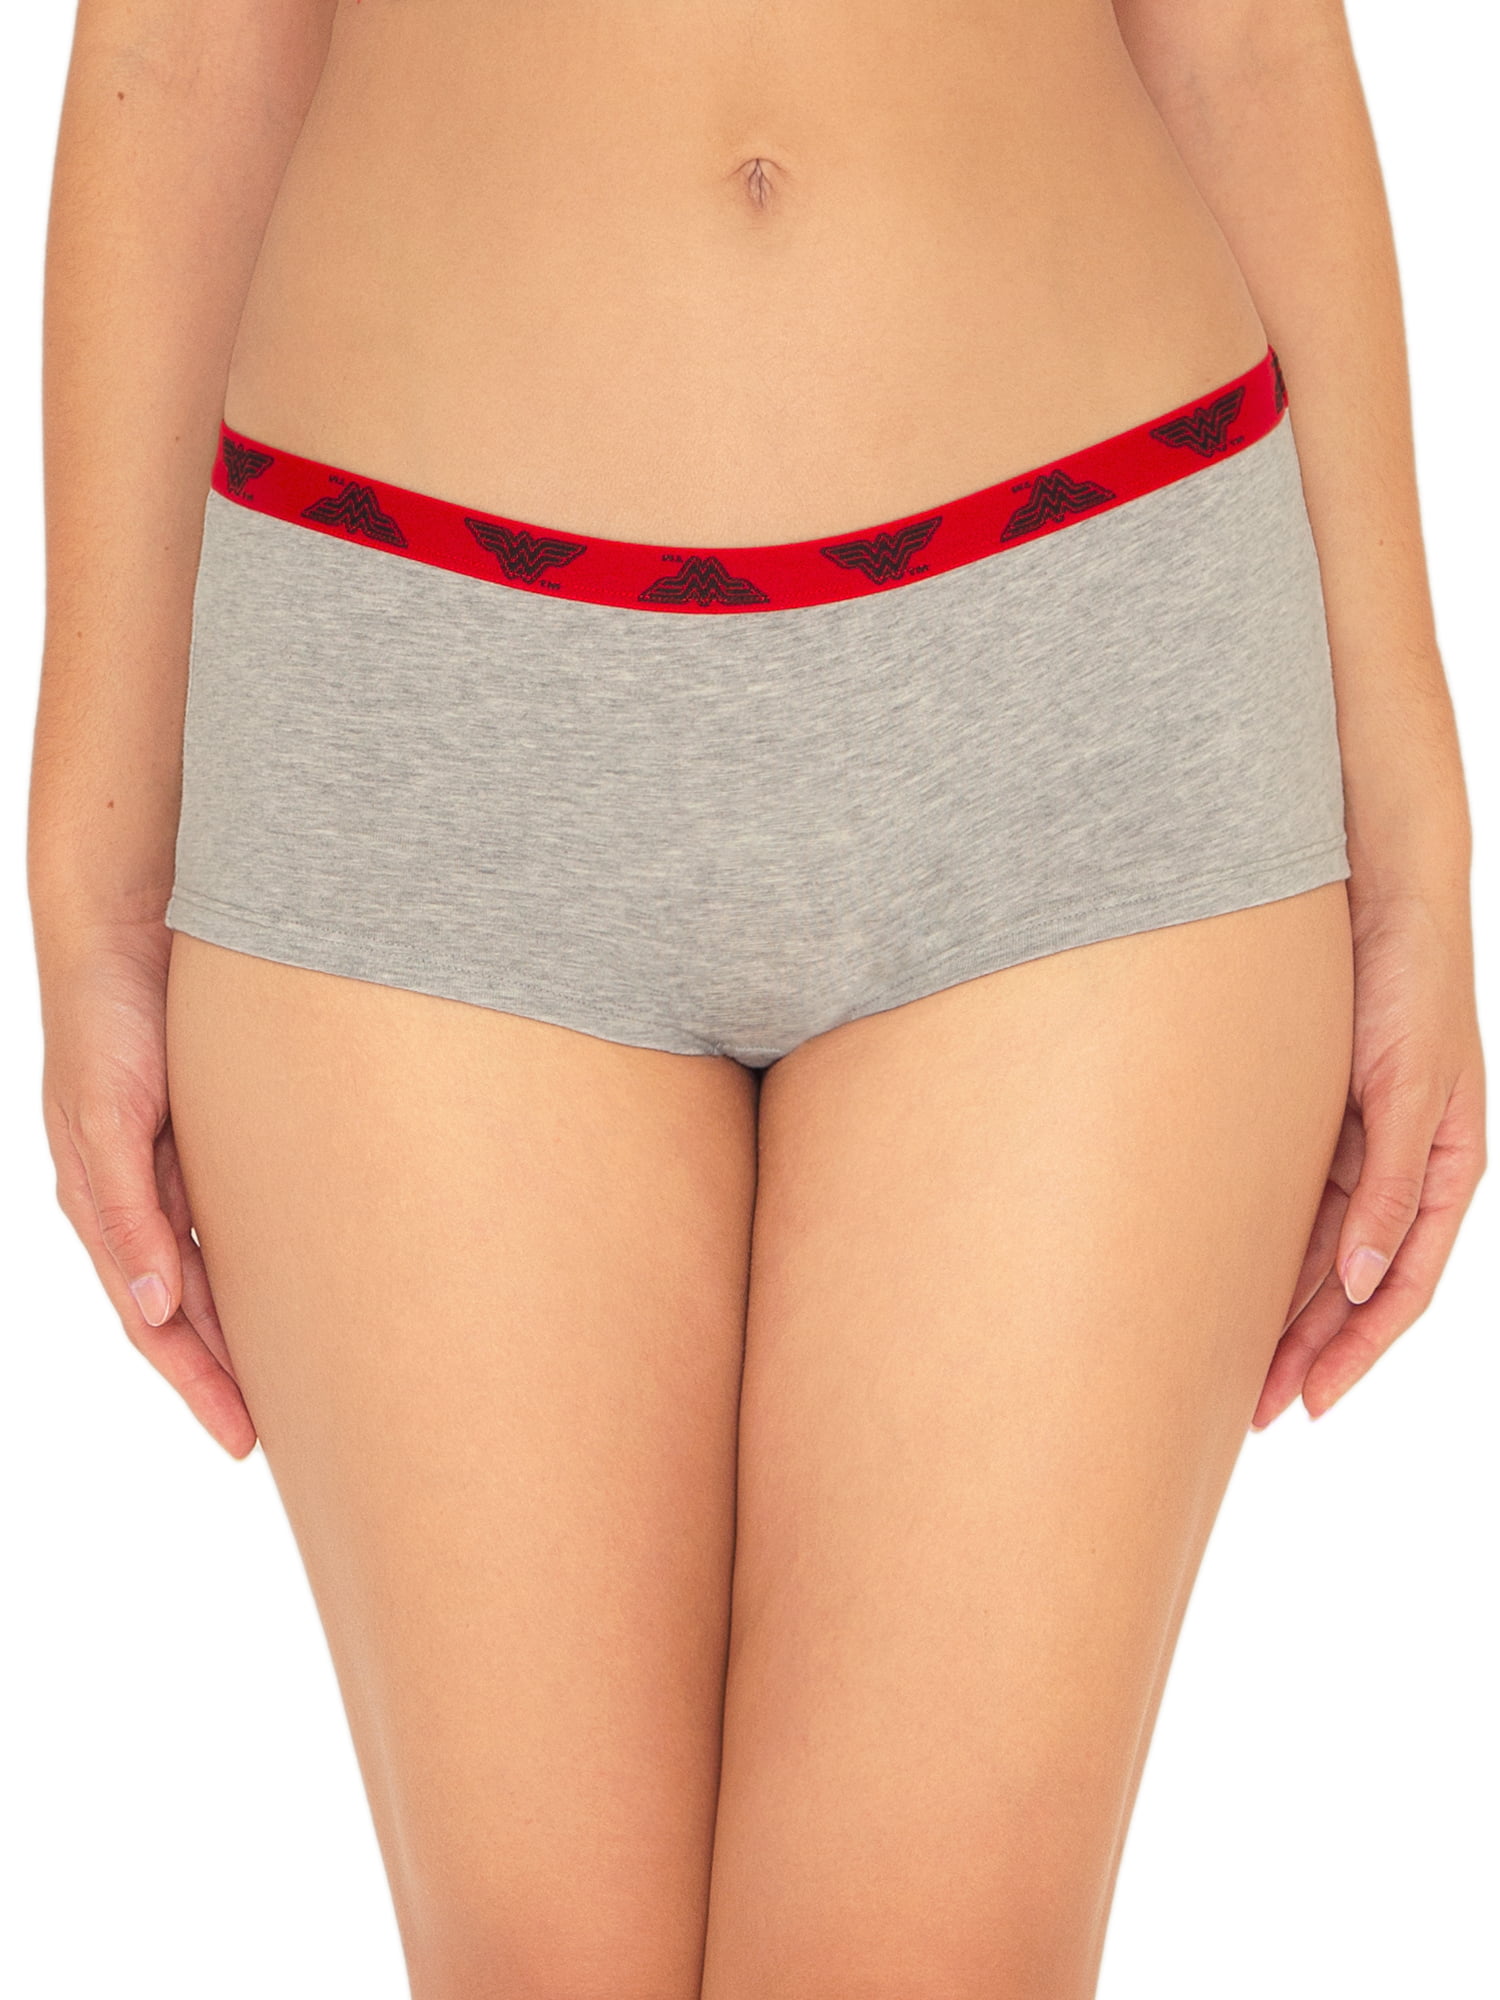 Women's Panties for sale in Boyette, Facebook Marketplace